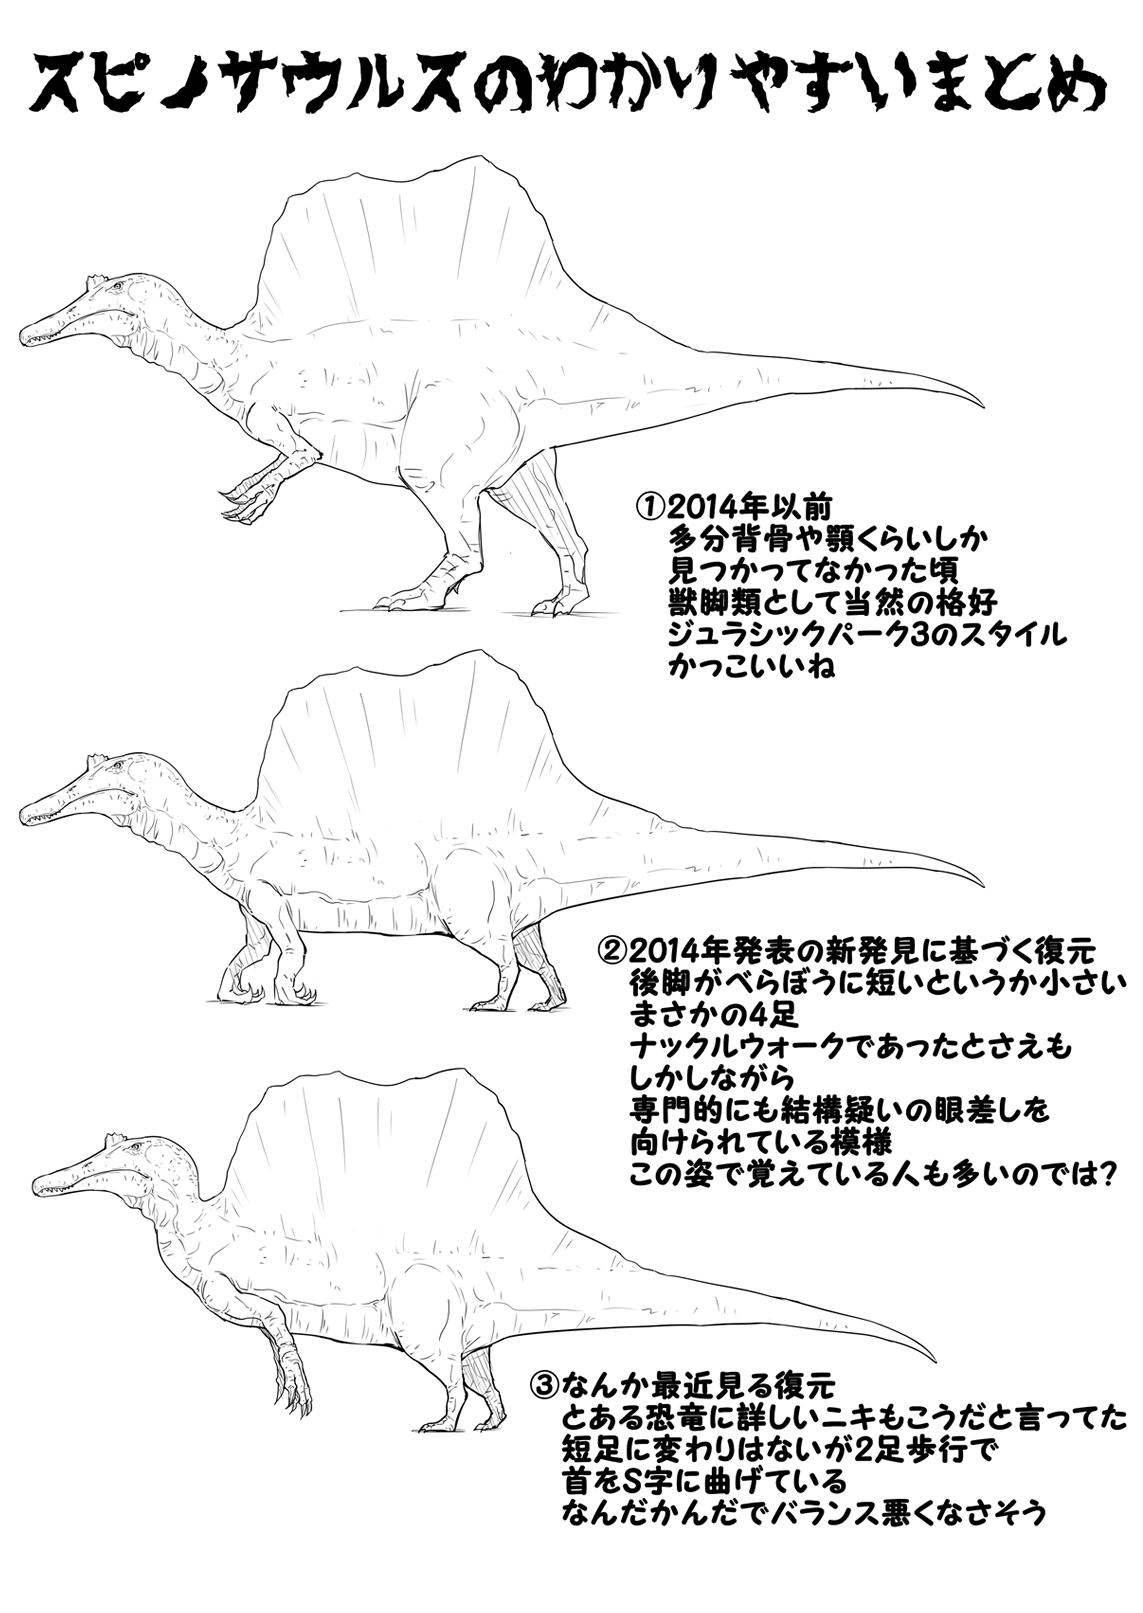 Oog スピノサウルス考察 T Co Sgqhqq2pcx Twitter